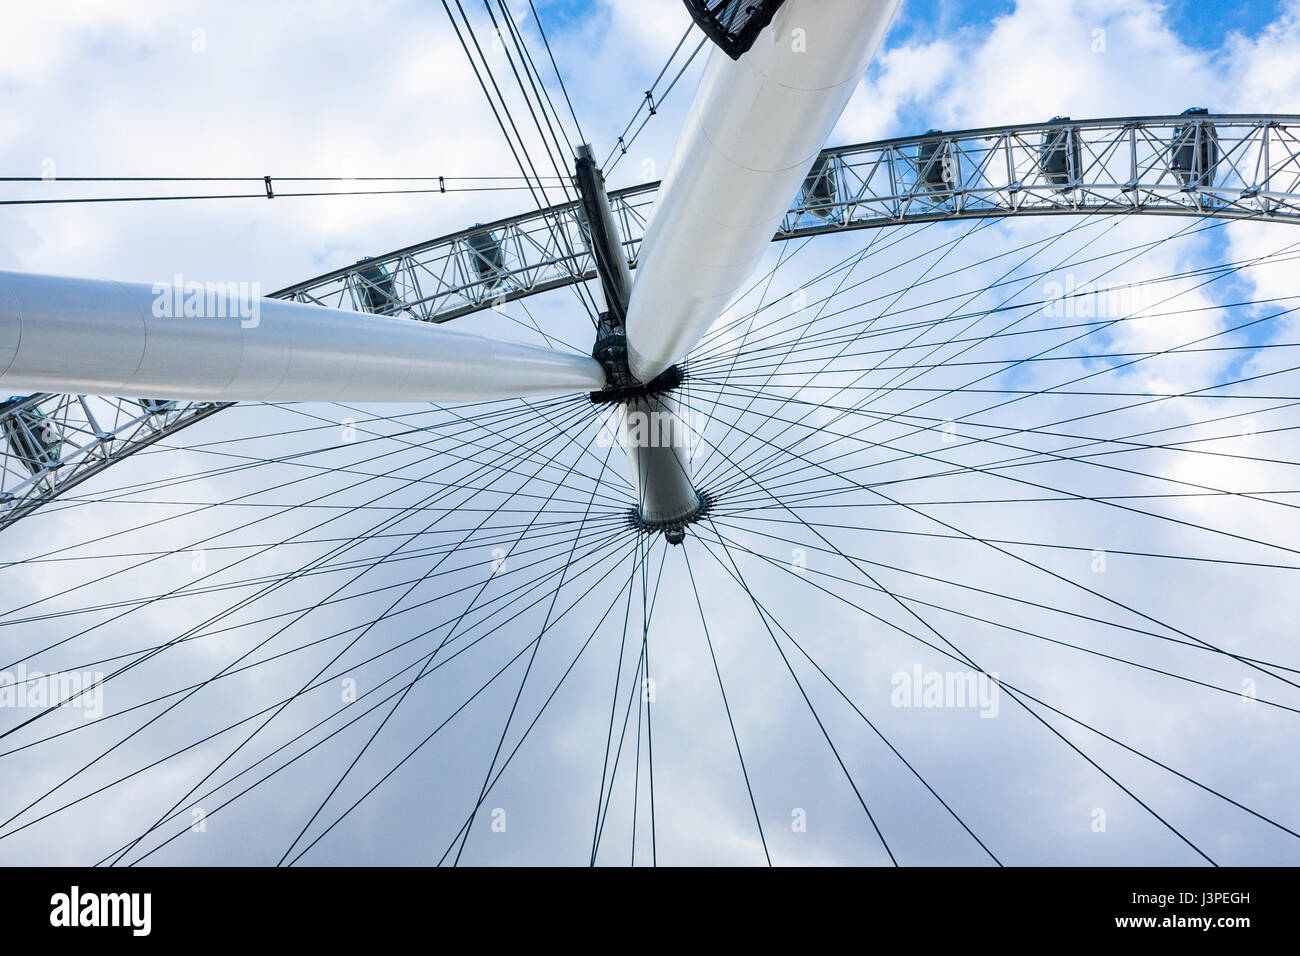 London Eye, London, England-Kauf von Dreamstime: http://bit.ly/1h8v8Y9 Stockfoto